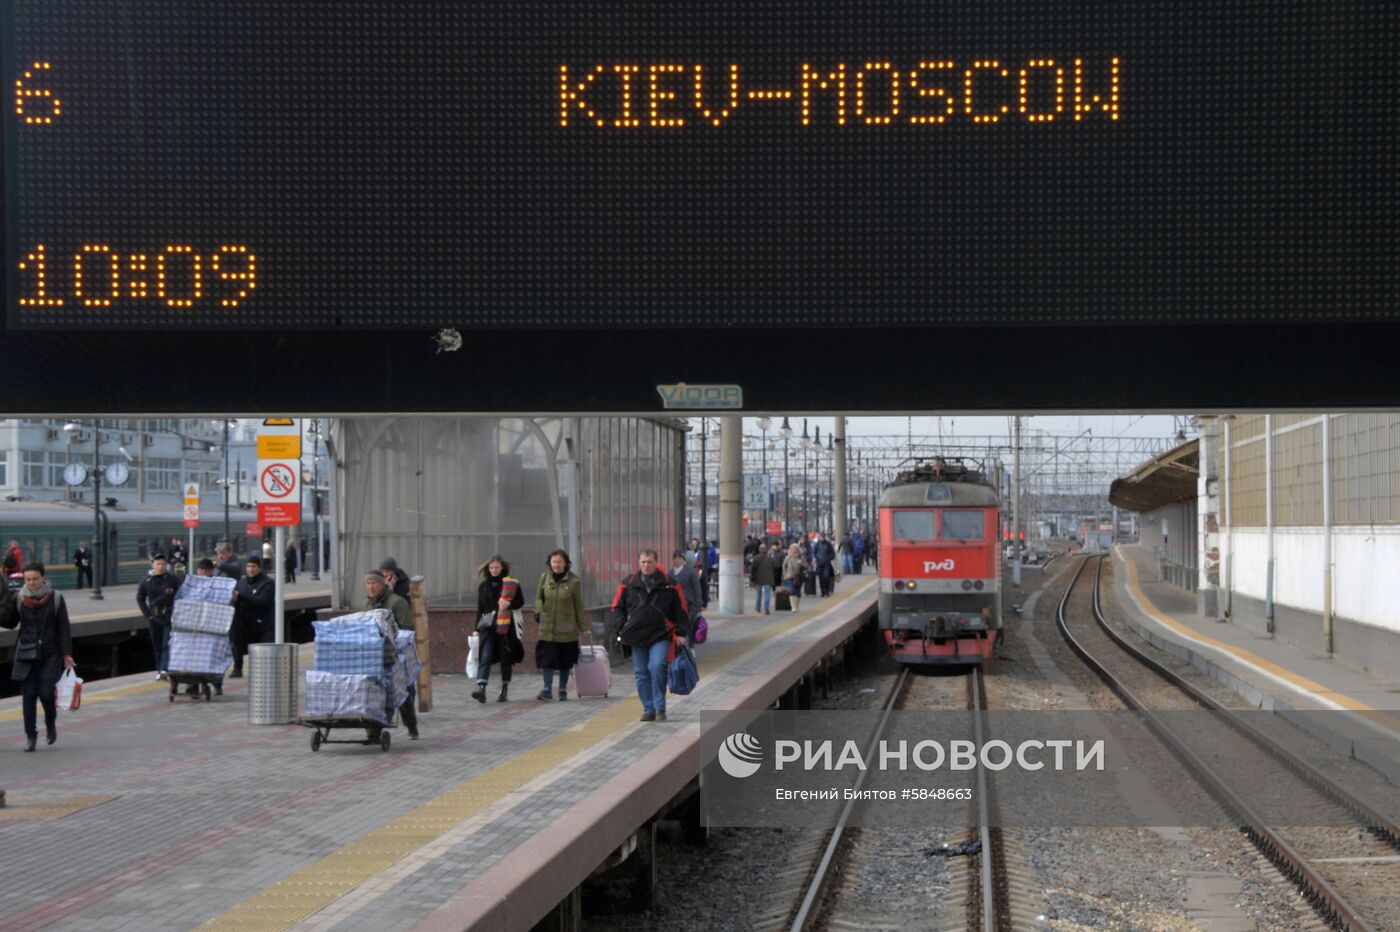 Прибытие поезда "Киев-Москва" на Киевский вокзал